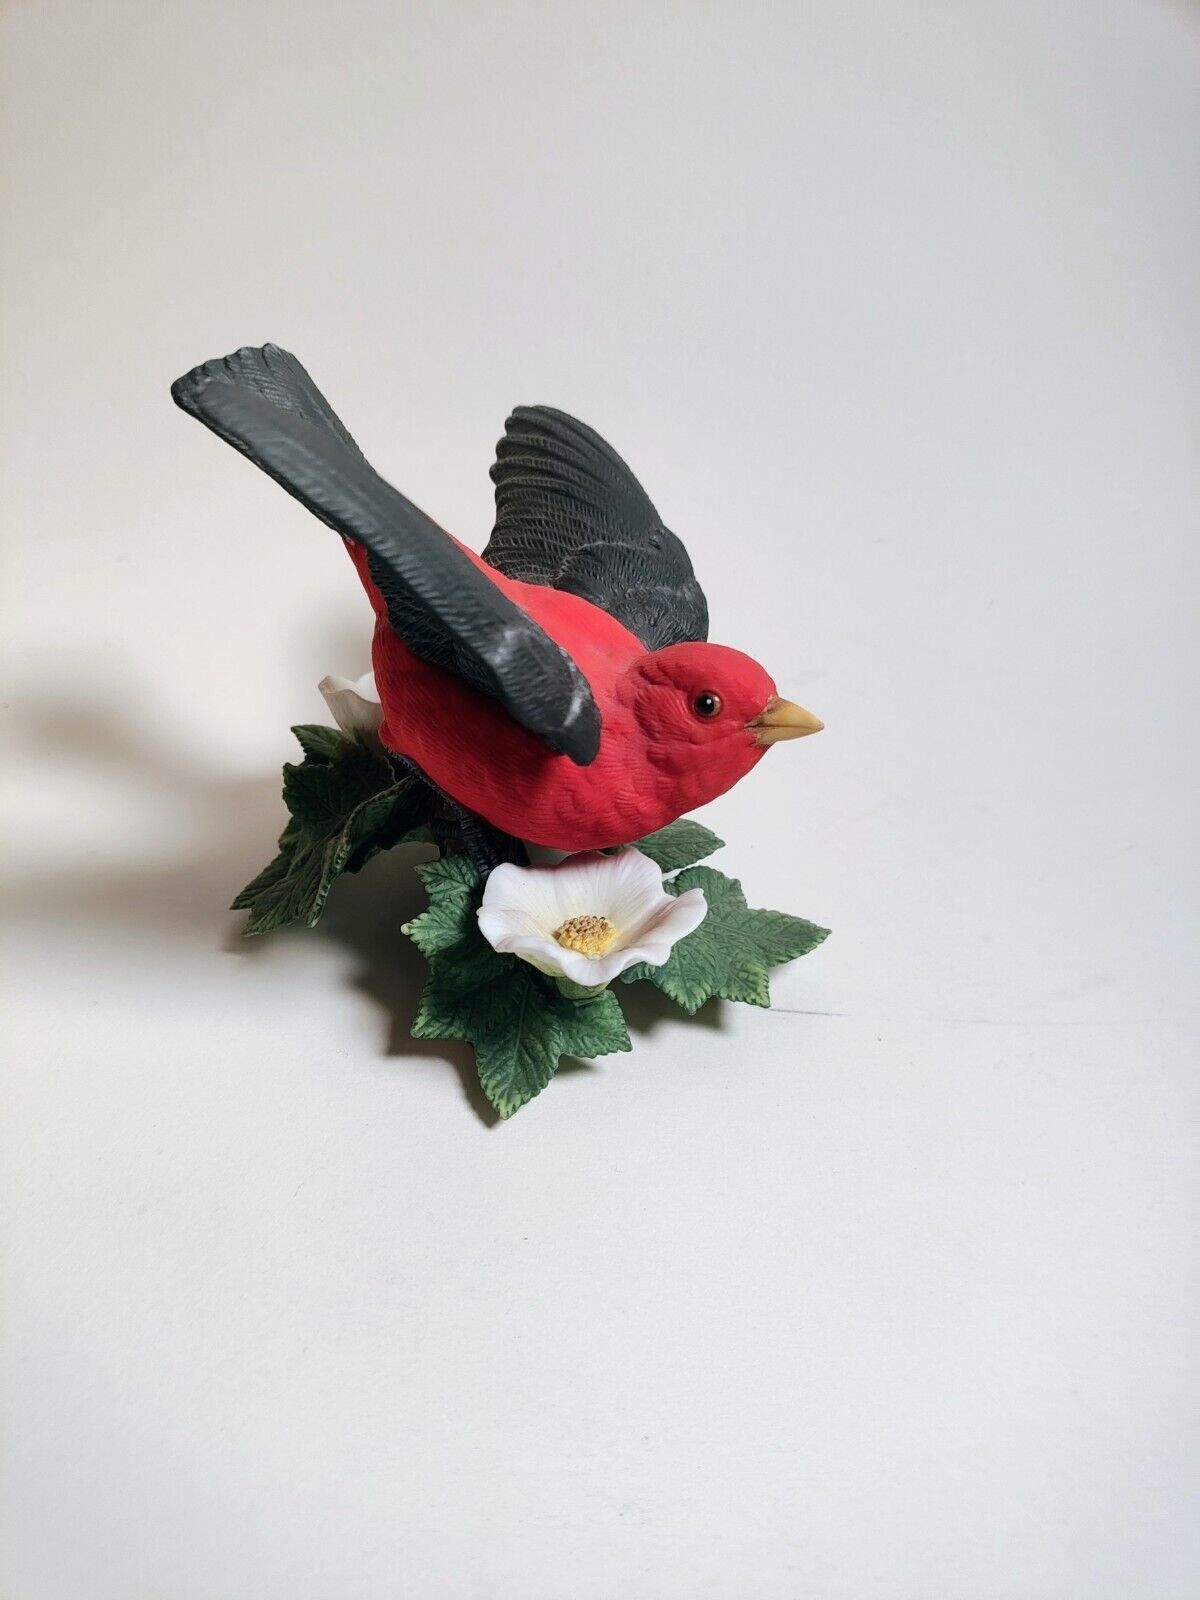 Lenox Fine Porcelain Garden Birds Figurine Scarlet Tanager 1992 Vintage